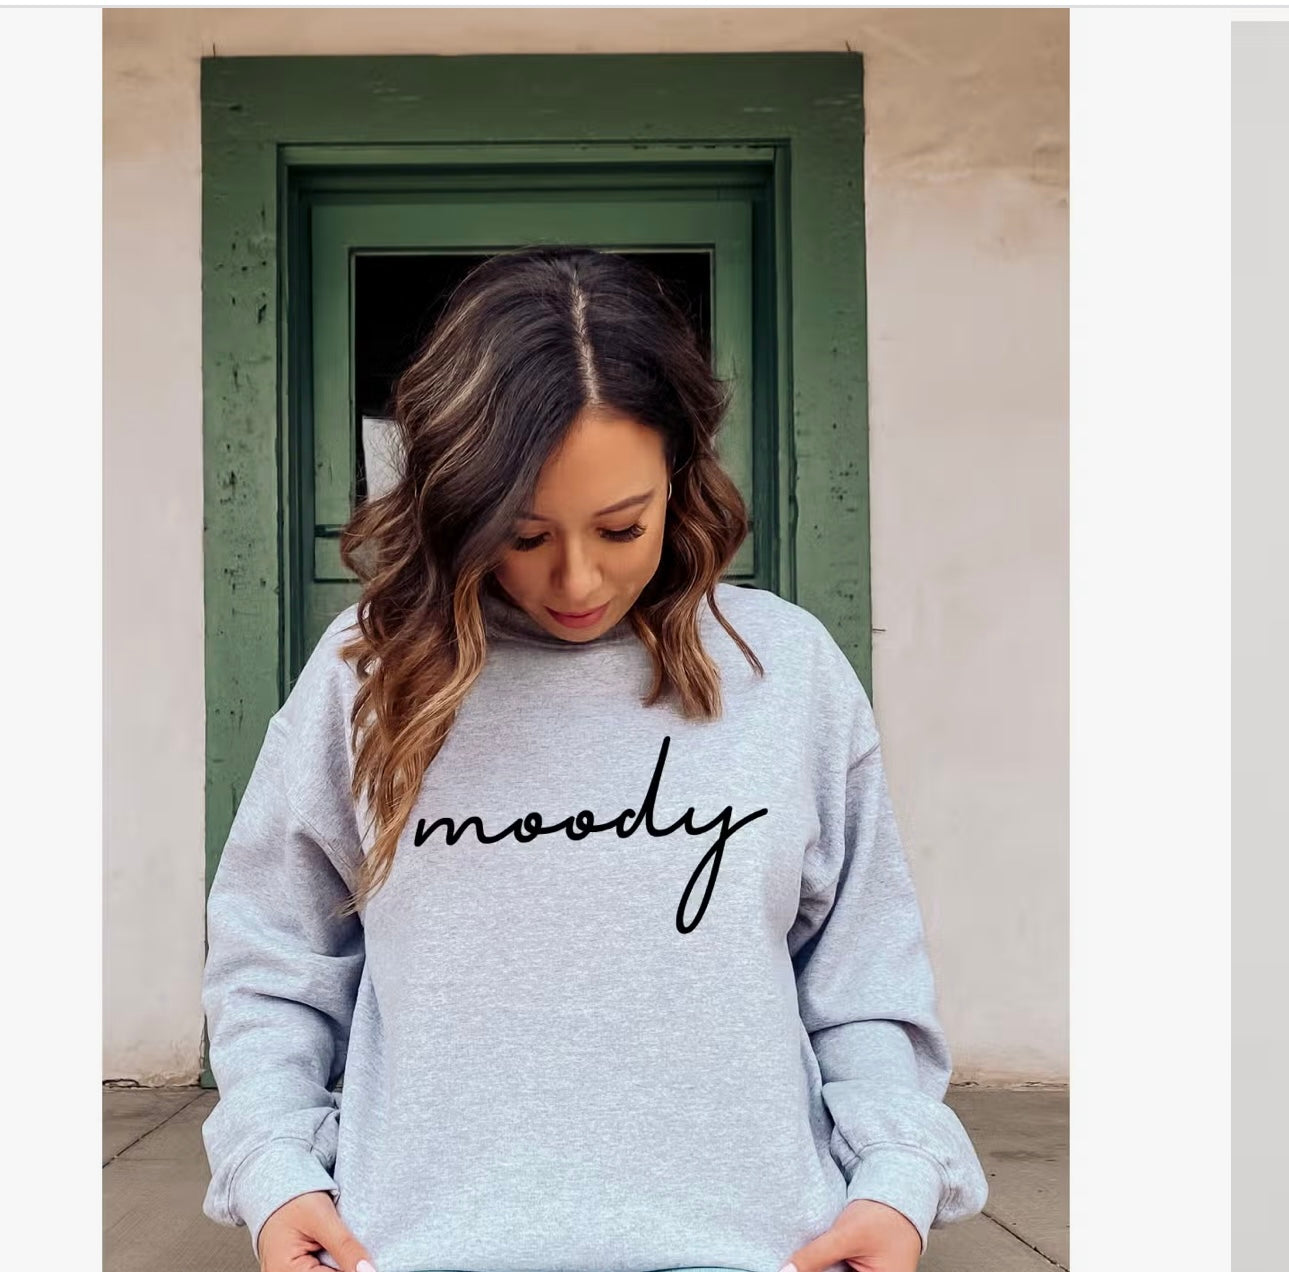 Moody Crewneck Sweatshirt